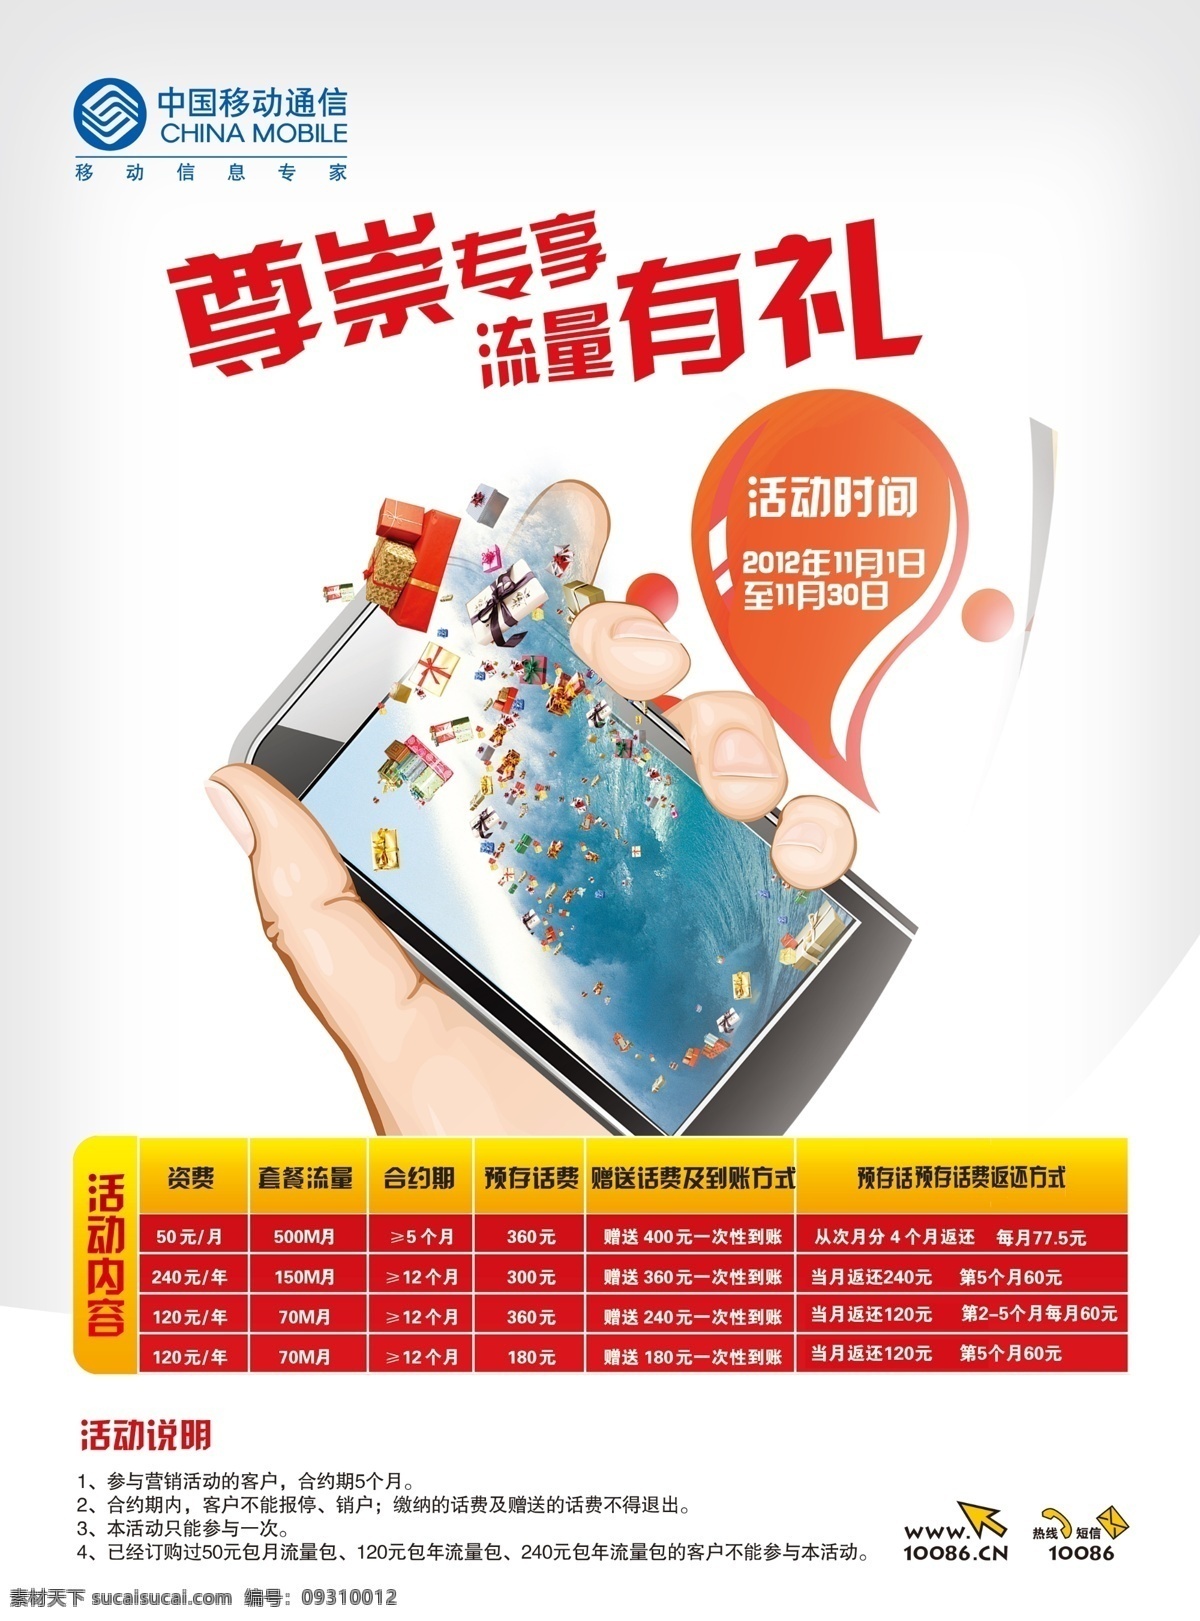 广告设计模板 移动 源文件 中国移动 模板下载 尊崇专享 流量有礼 手握手机 其他海报设计